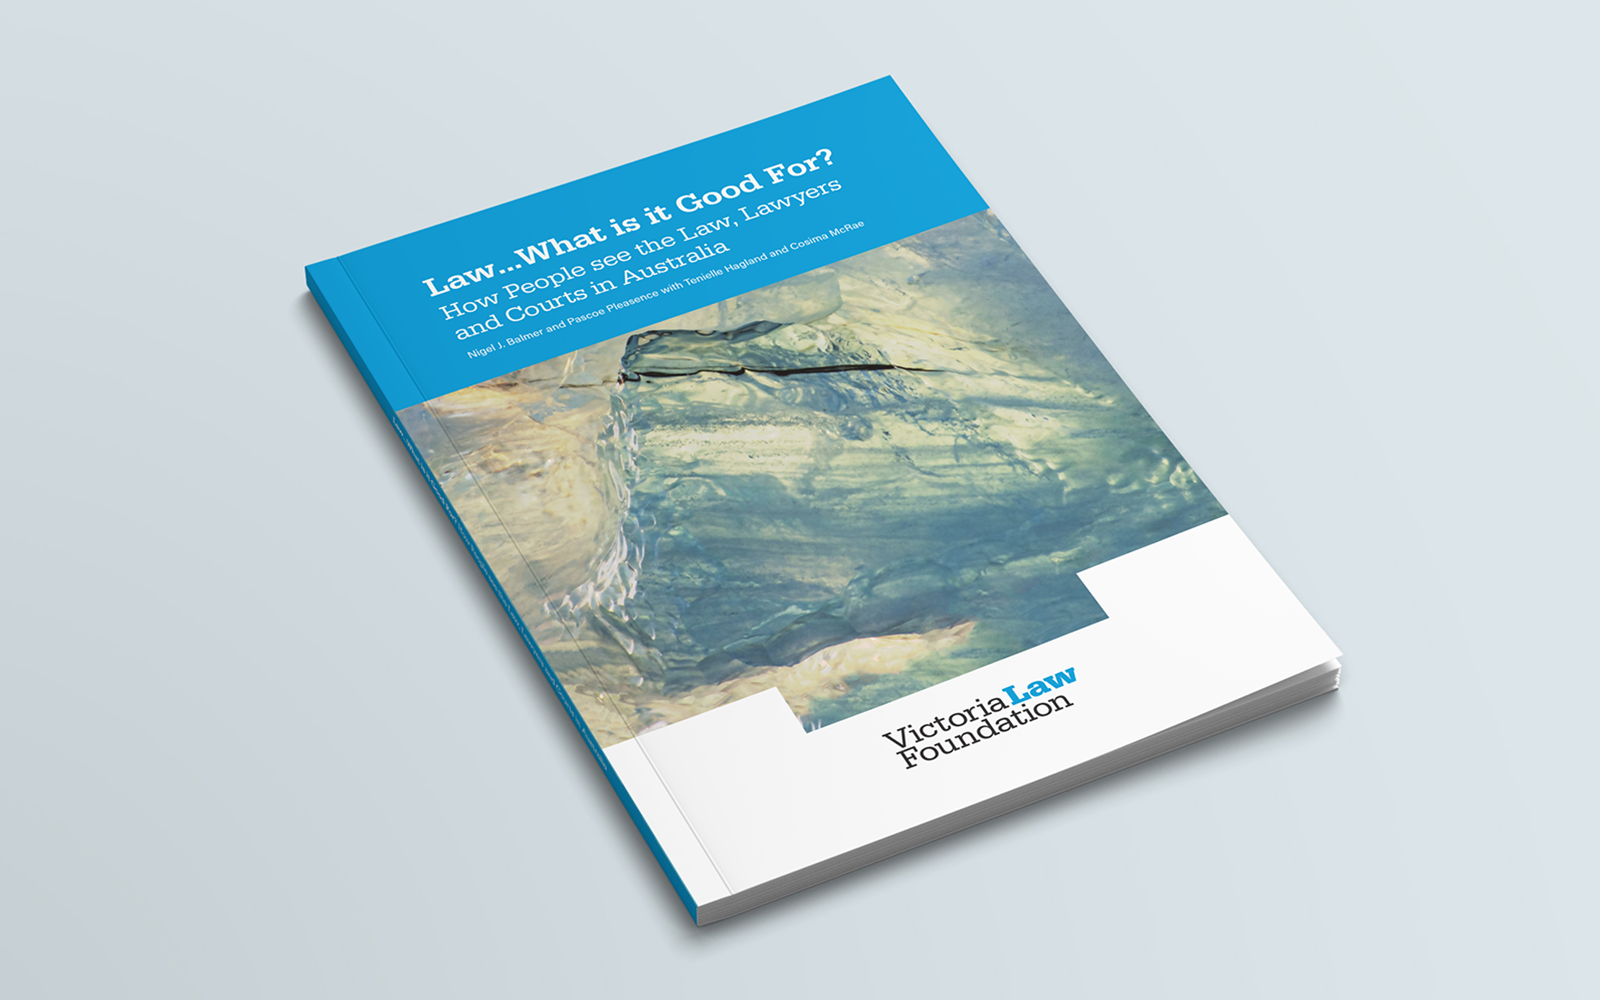 Victoria Law Foundation report cover design